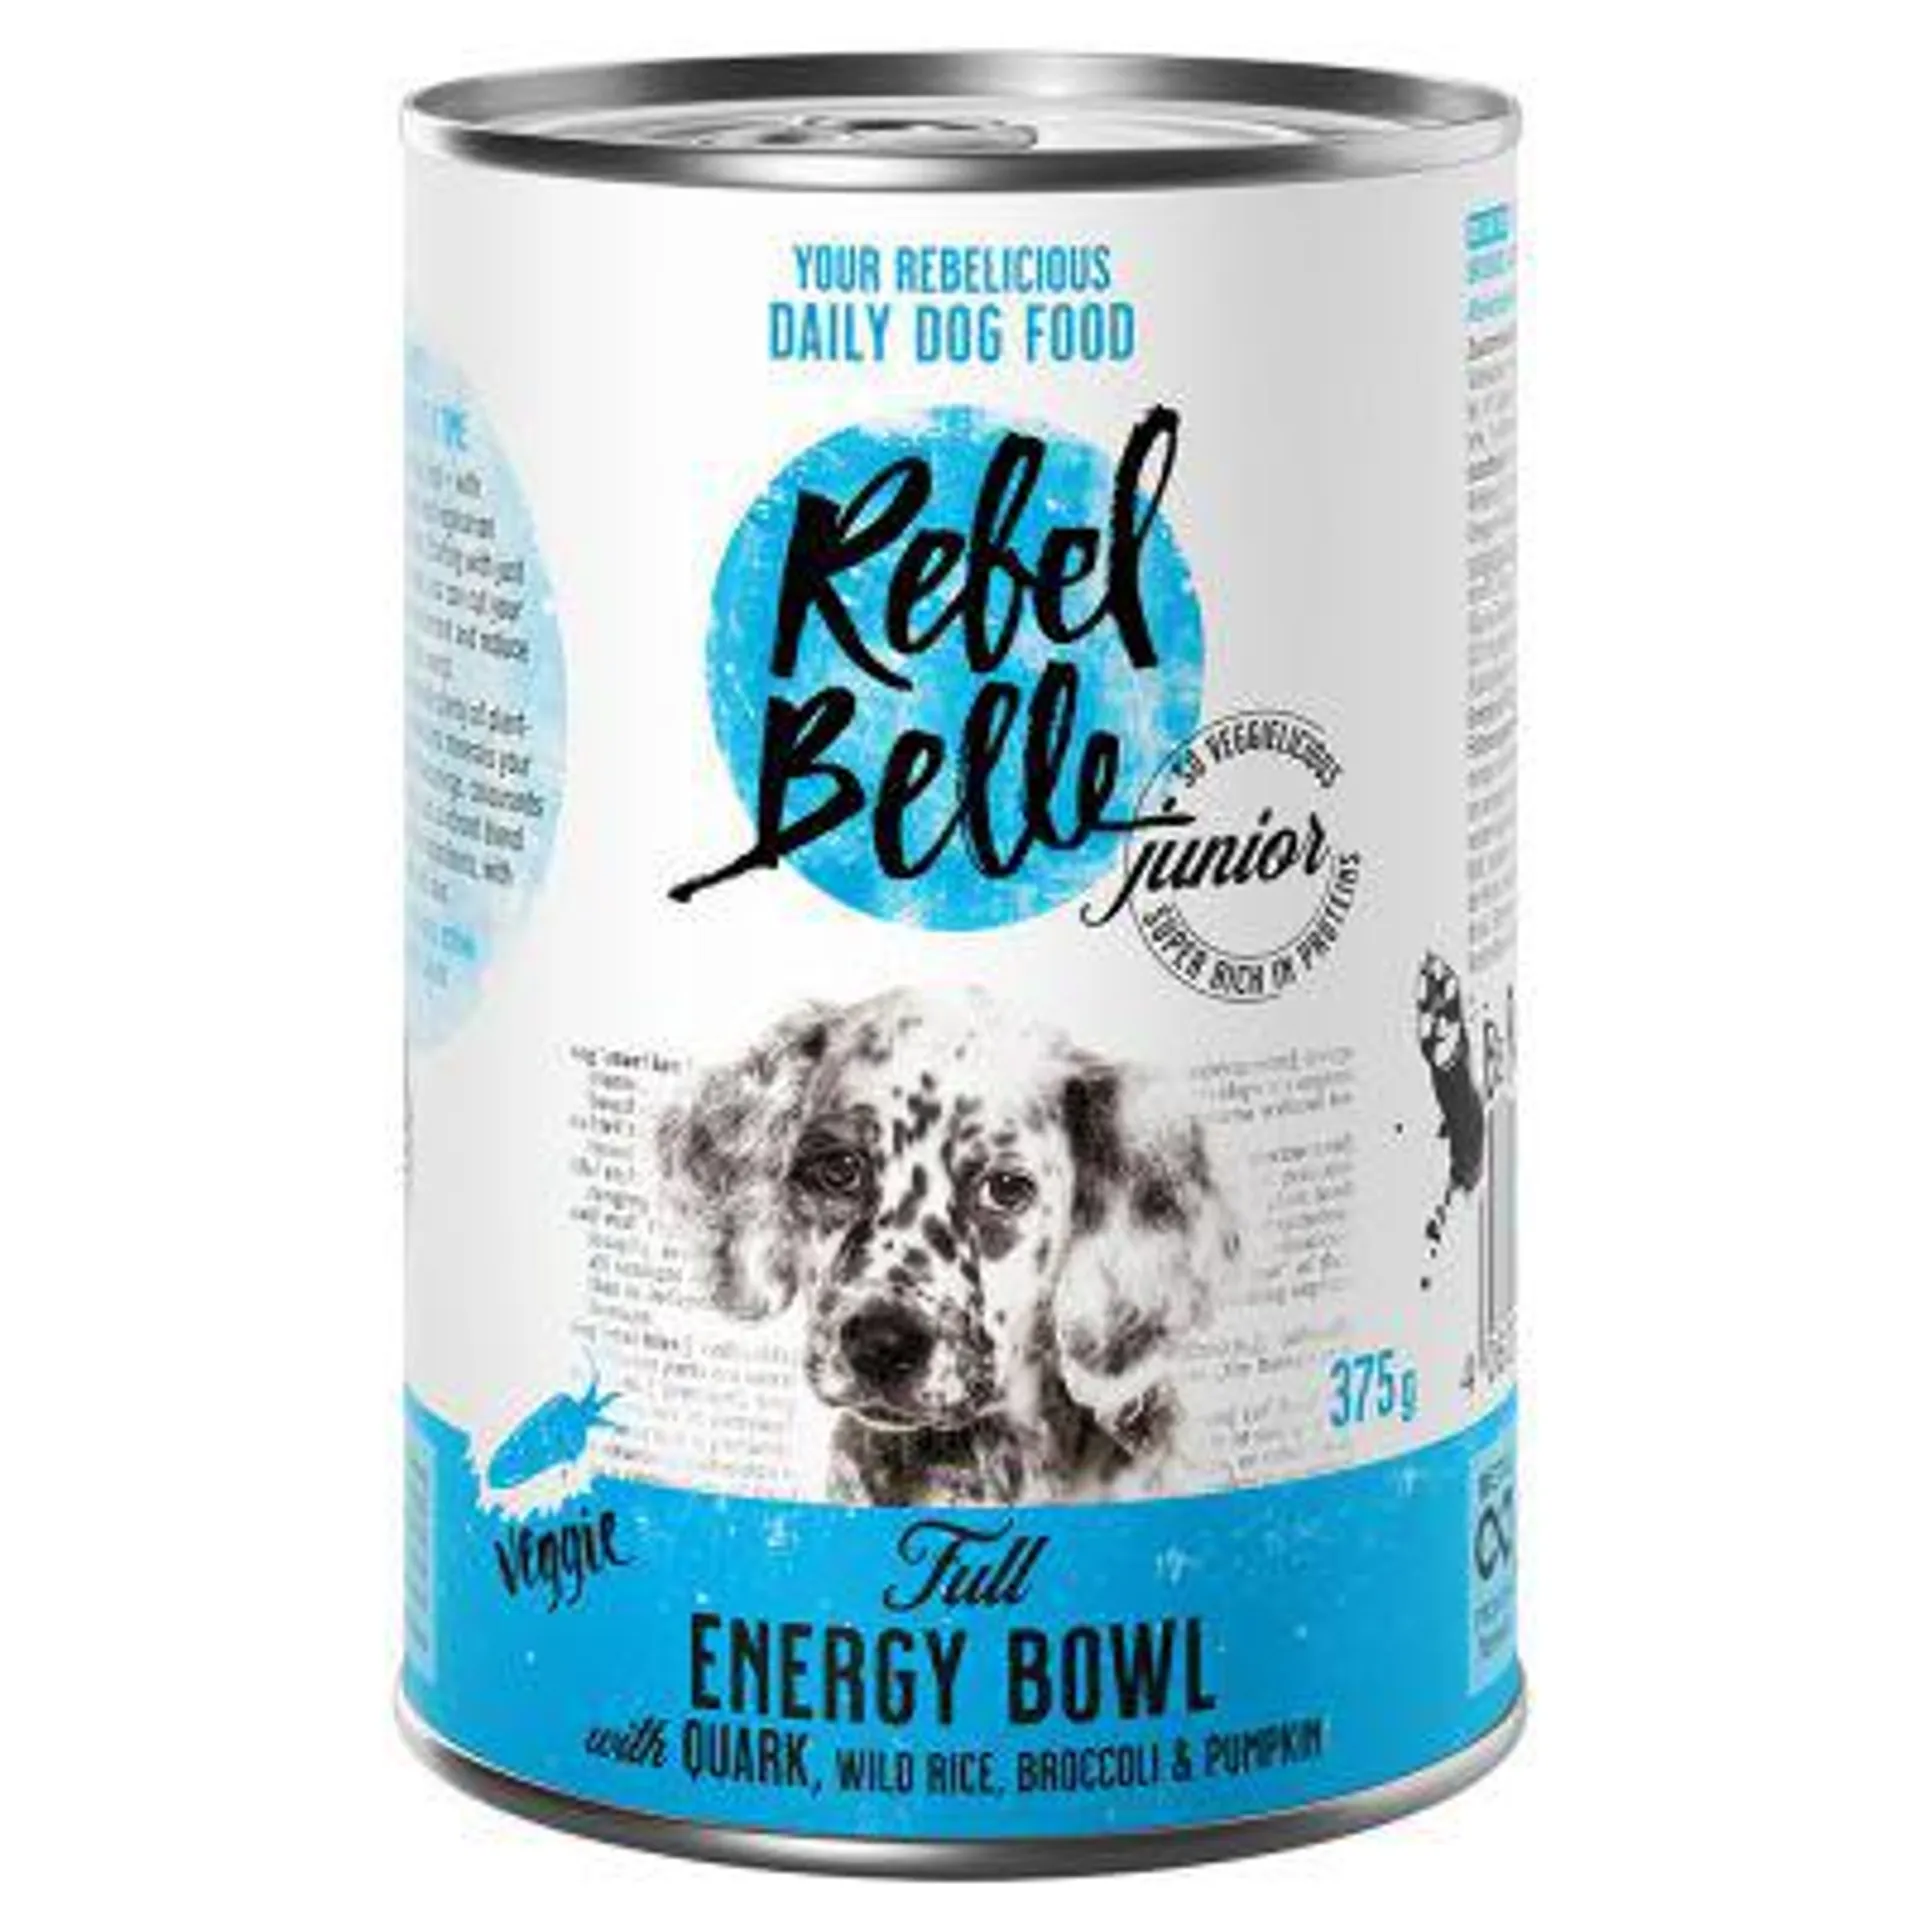 Rebel Belle Junior Full Energy Bowl - veggie